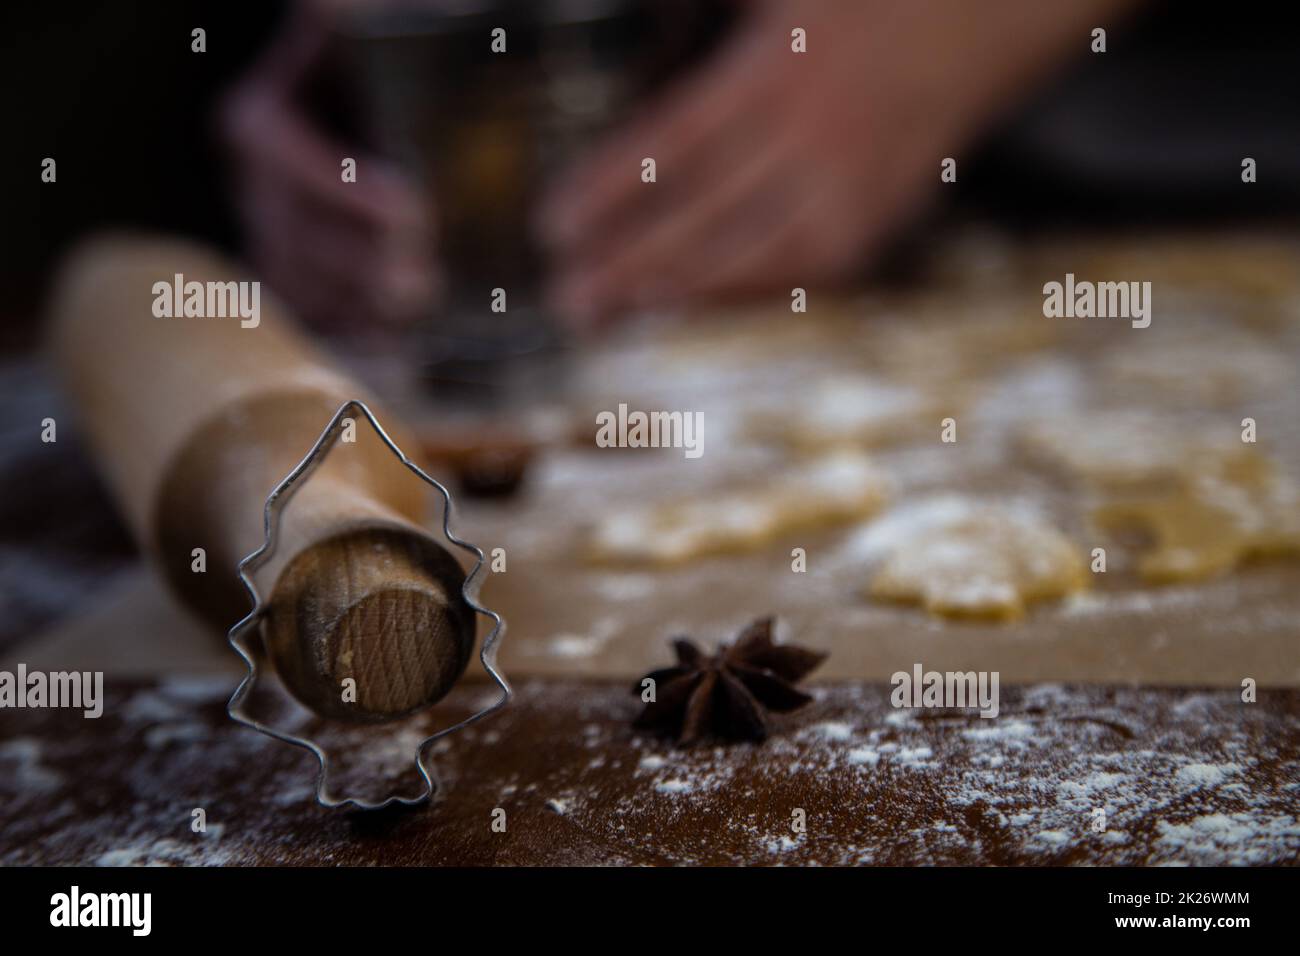 Ein weihnachtlicher, baumförmiger Schimmel, der sich auf eine Walznadel lehnt, vor einem Hintergrund aus Keksen, Pergament und Mehl, das aus Teig geschnitten wurde. Fotos in dunklen Farben. Stockfoto